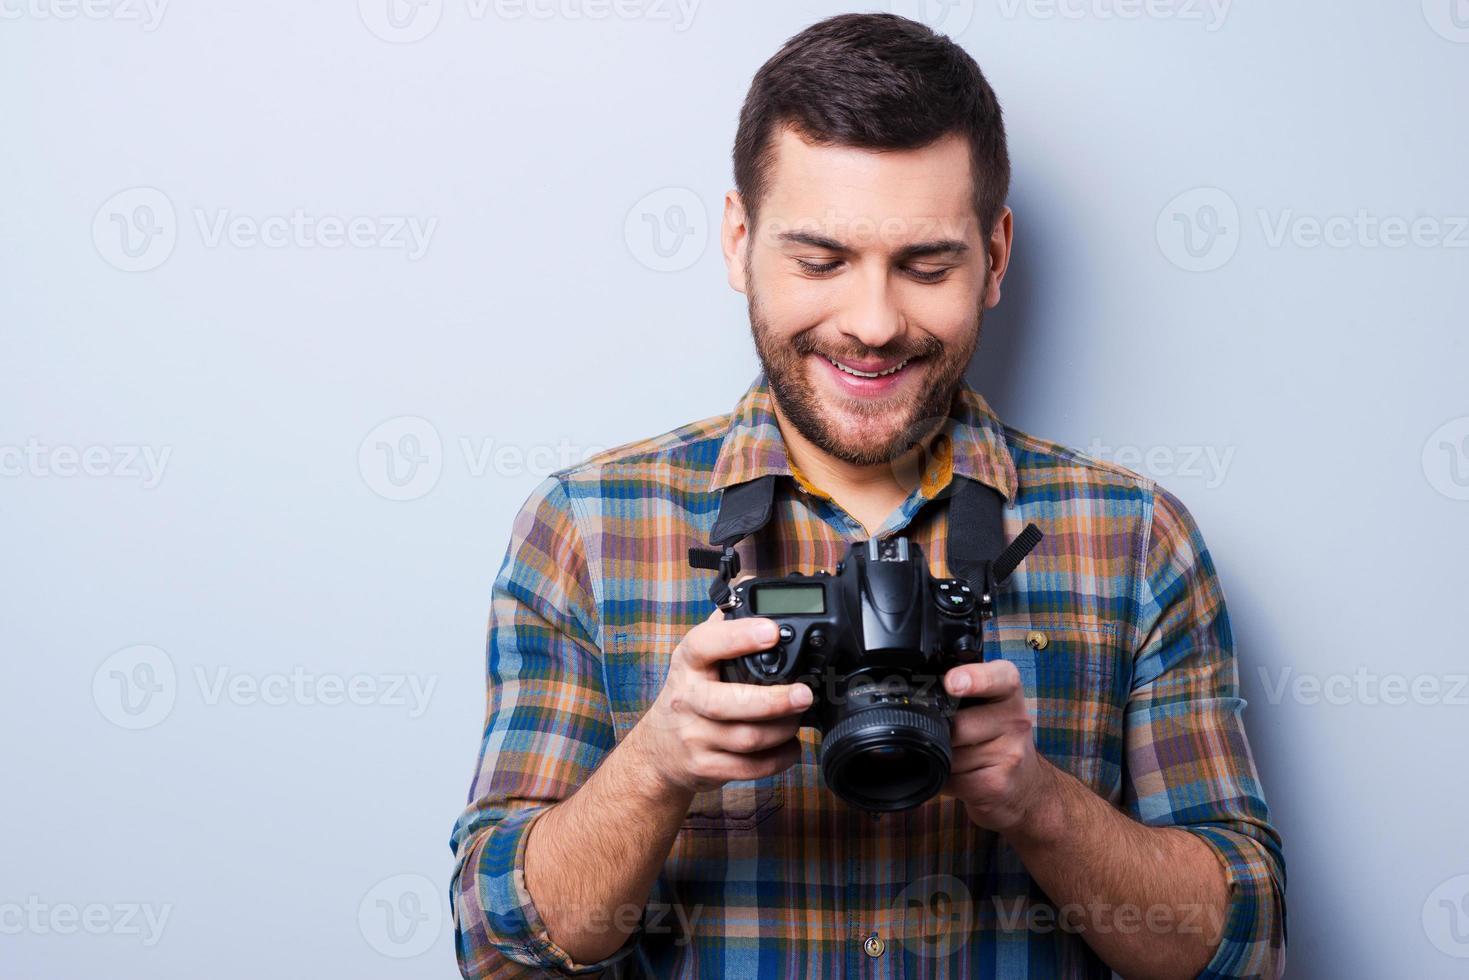 instelling de camera. portret van zelfverzekerd jong Mens in overhemd Holding camera terwijl staand tegen grijs achtergrond foto